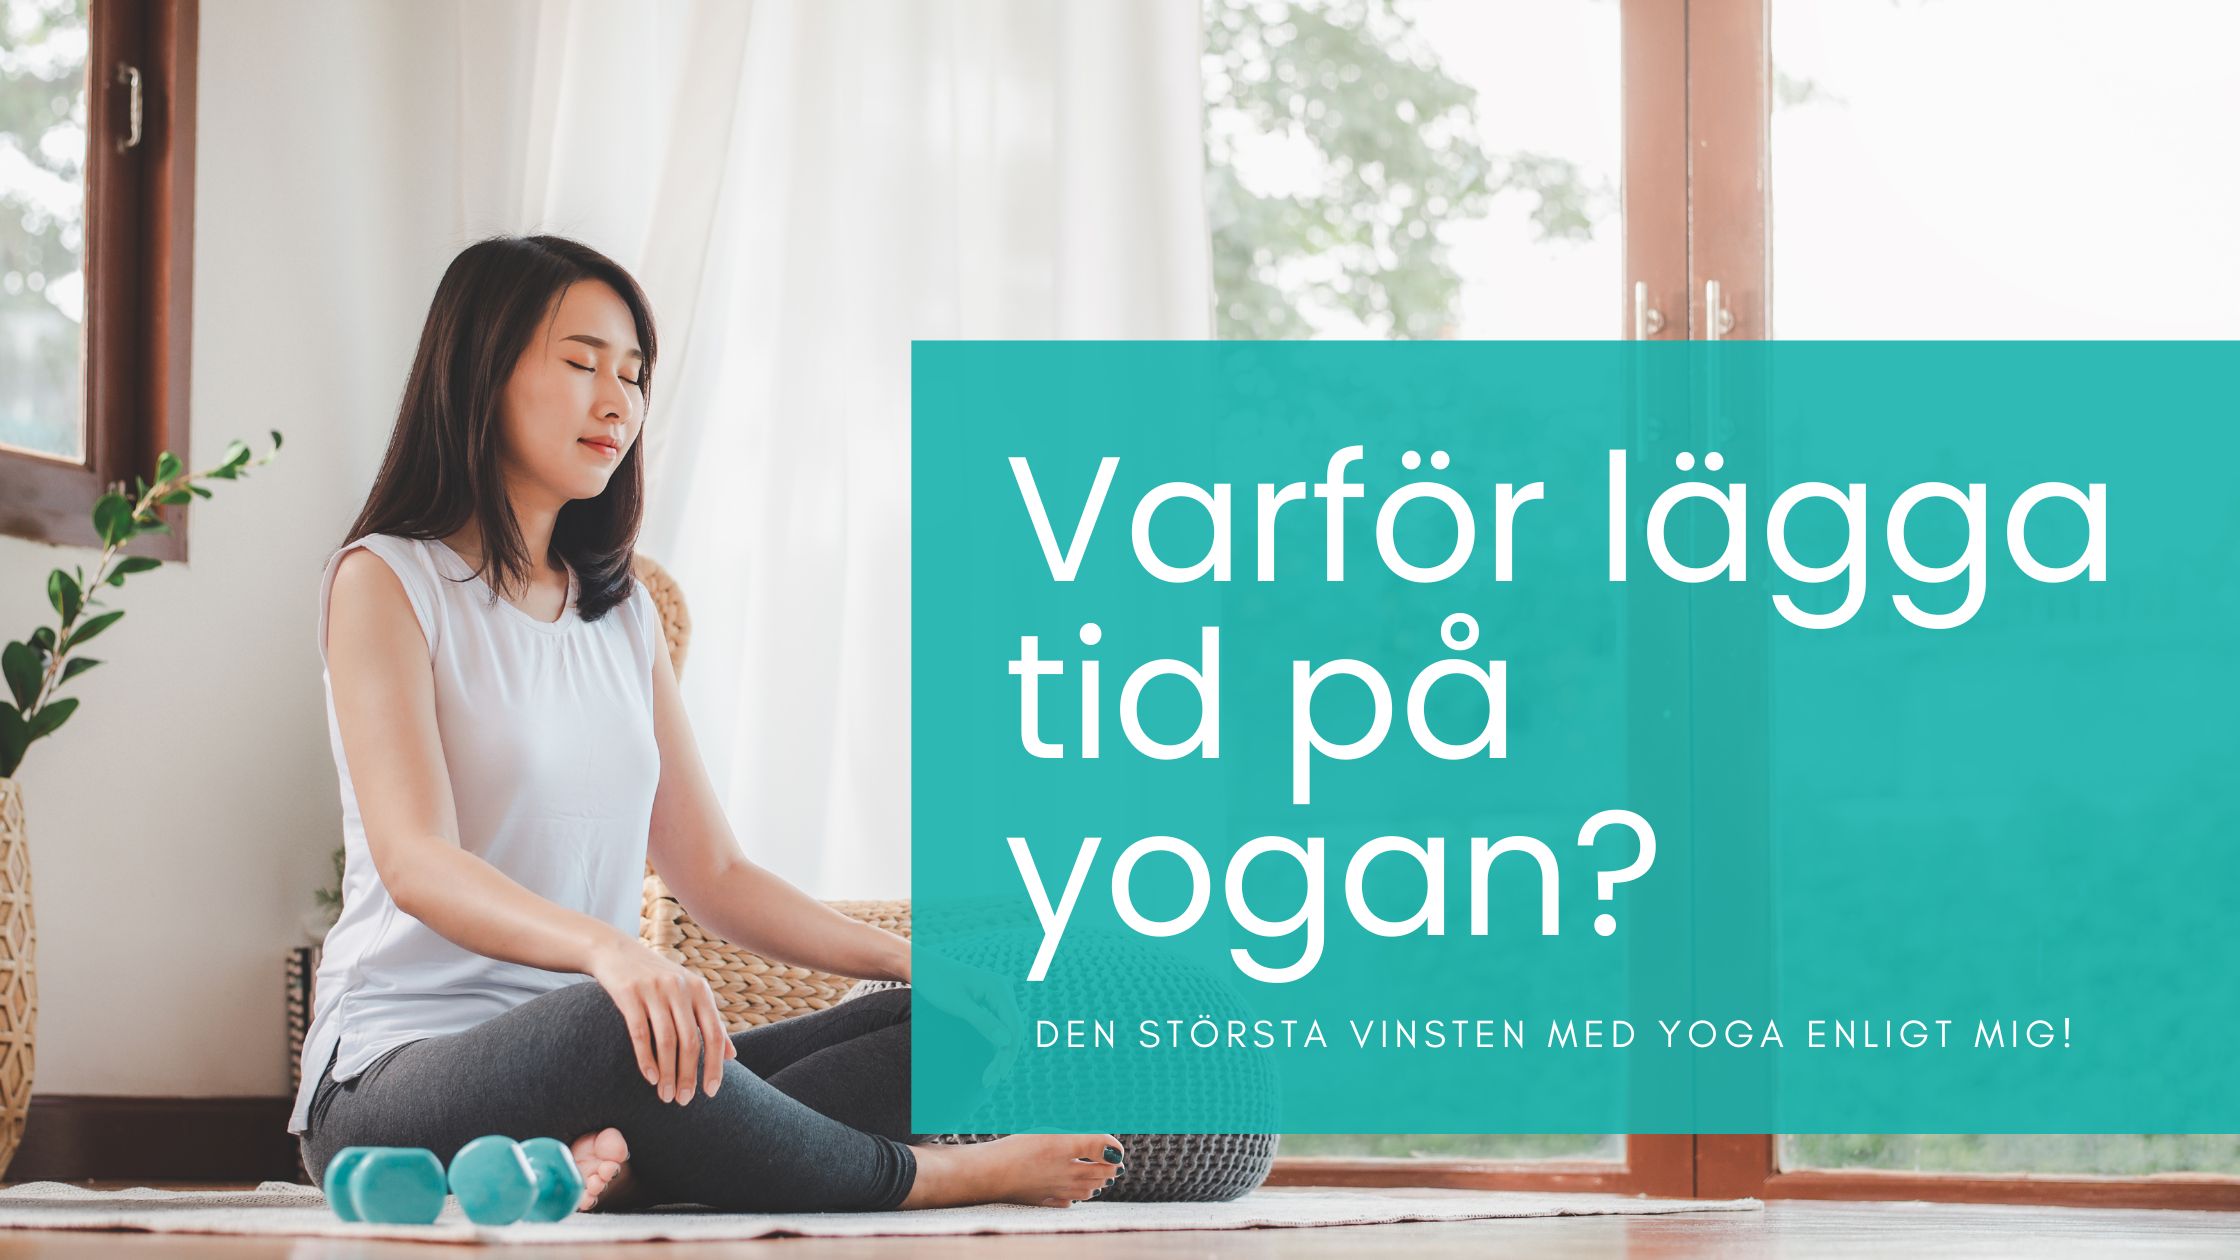 Kvinna som sitter i skräddarställning och blundar - kanske starten på en yogastund?